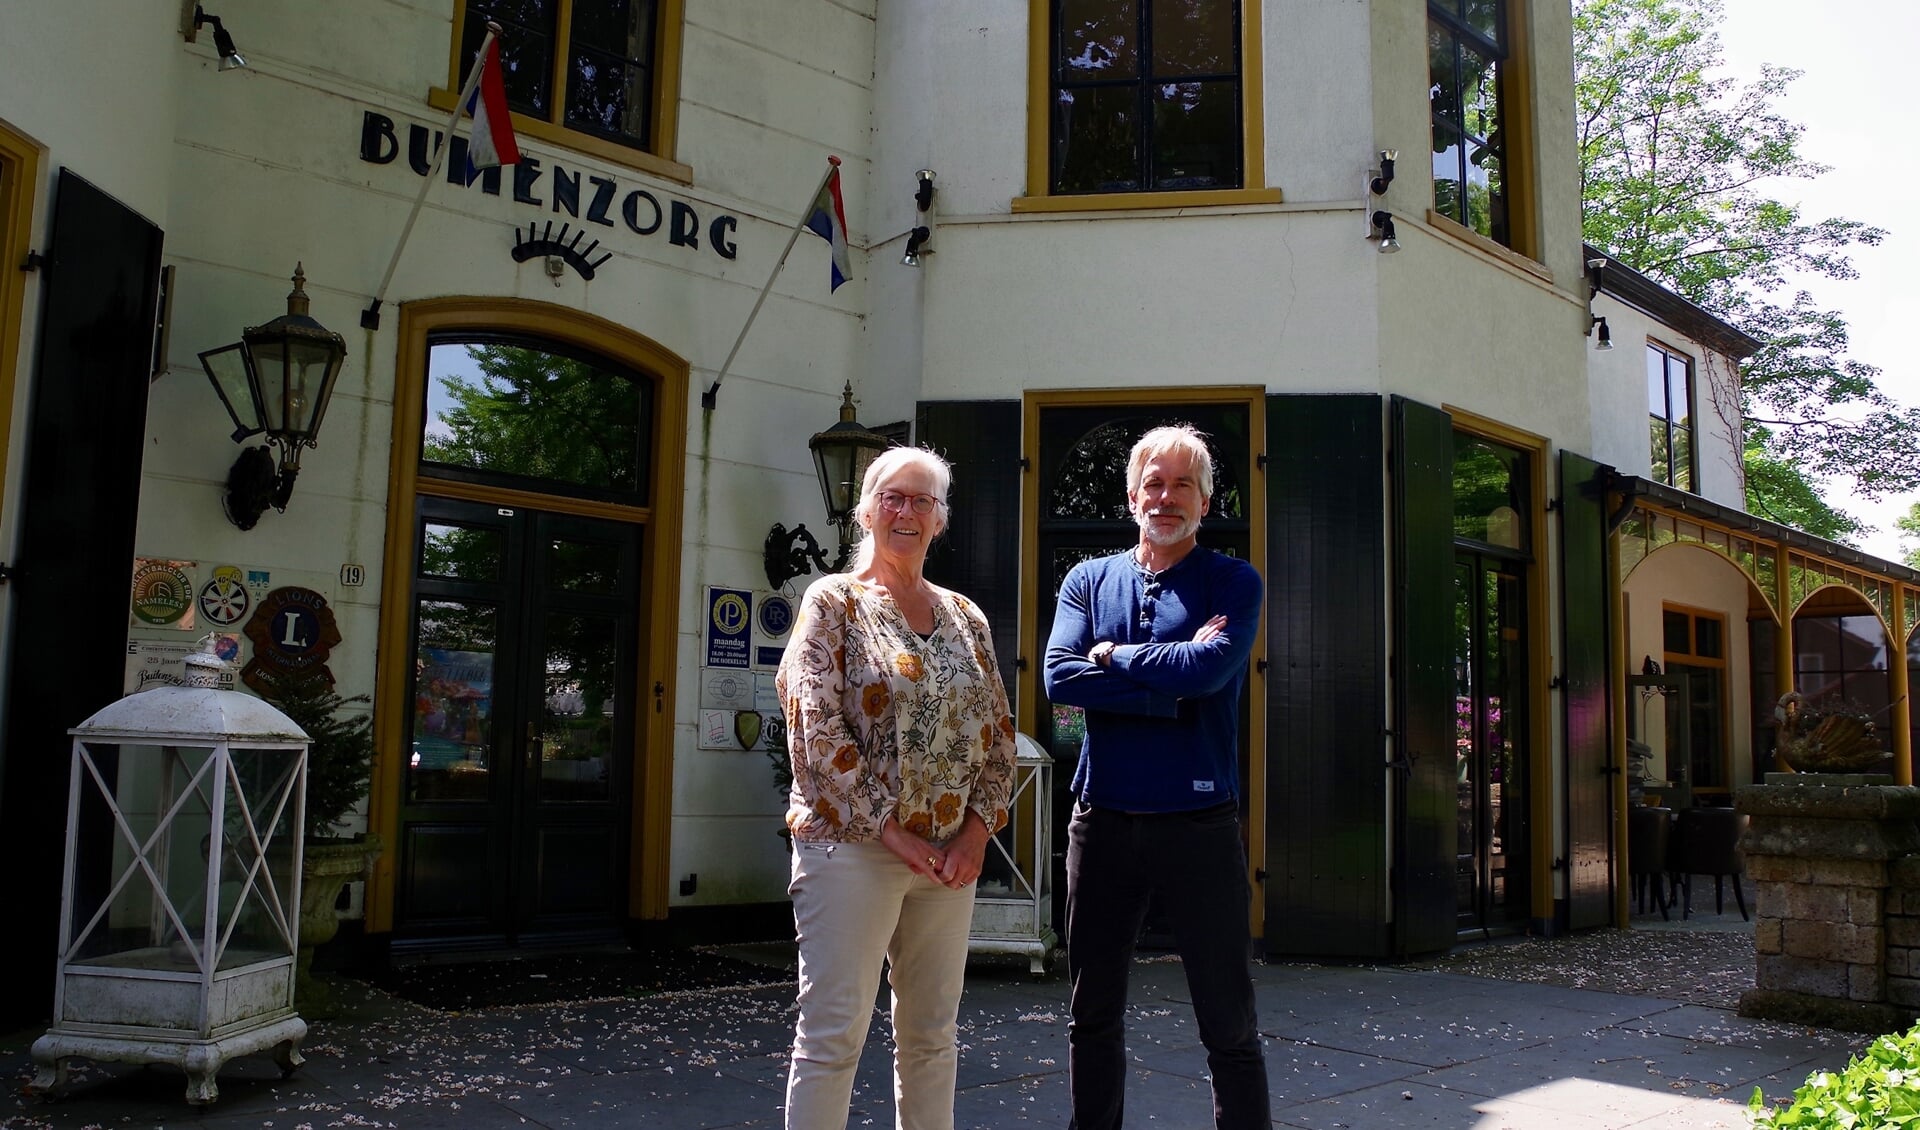 Moeder Yvon en zoon Lodewijk de Kruif voor restaurant Buitenzorg.